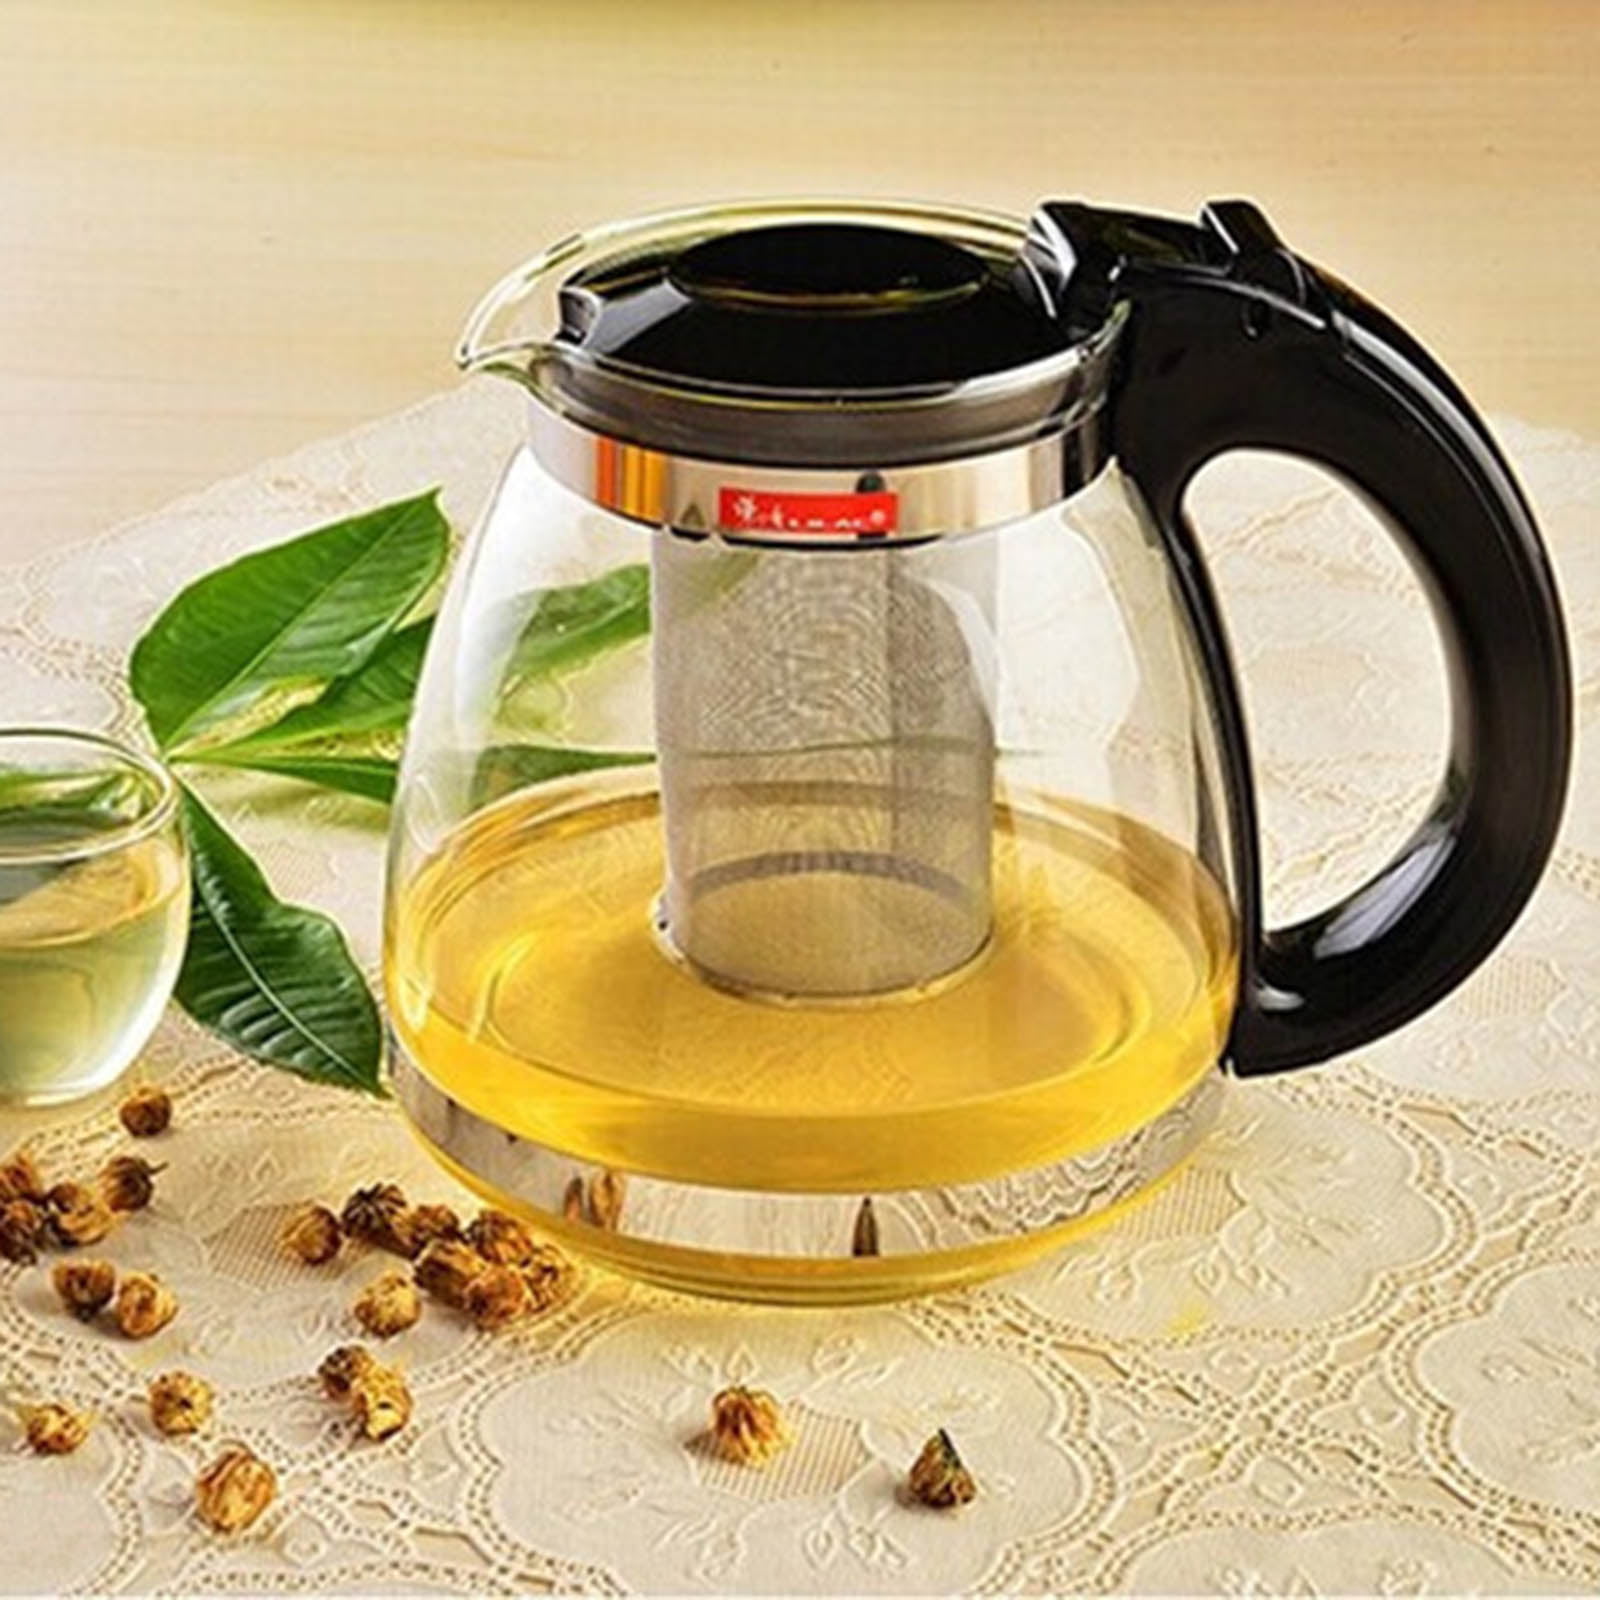 Yorten 1500ml Heat Resistant Glass Teapot Chinese Tea Set with Tea Infuser Filter Flower Tea Kettle Coffee Glass Maker Office Tea Pot 